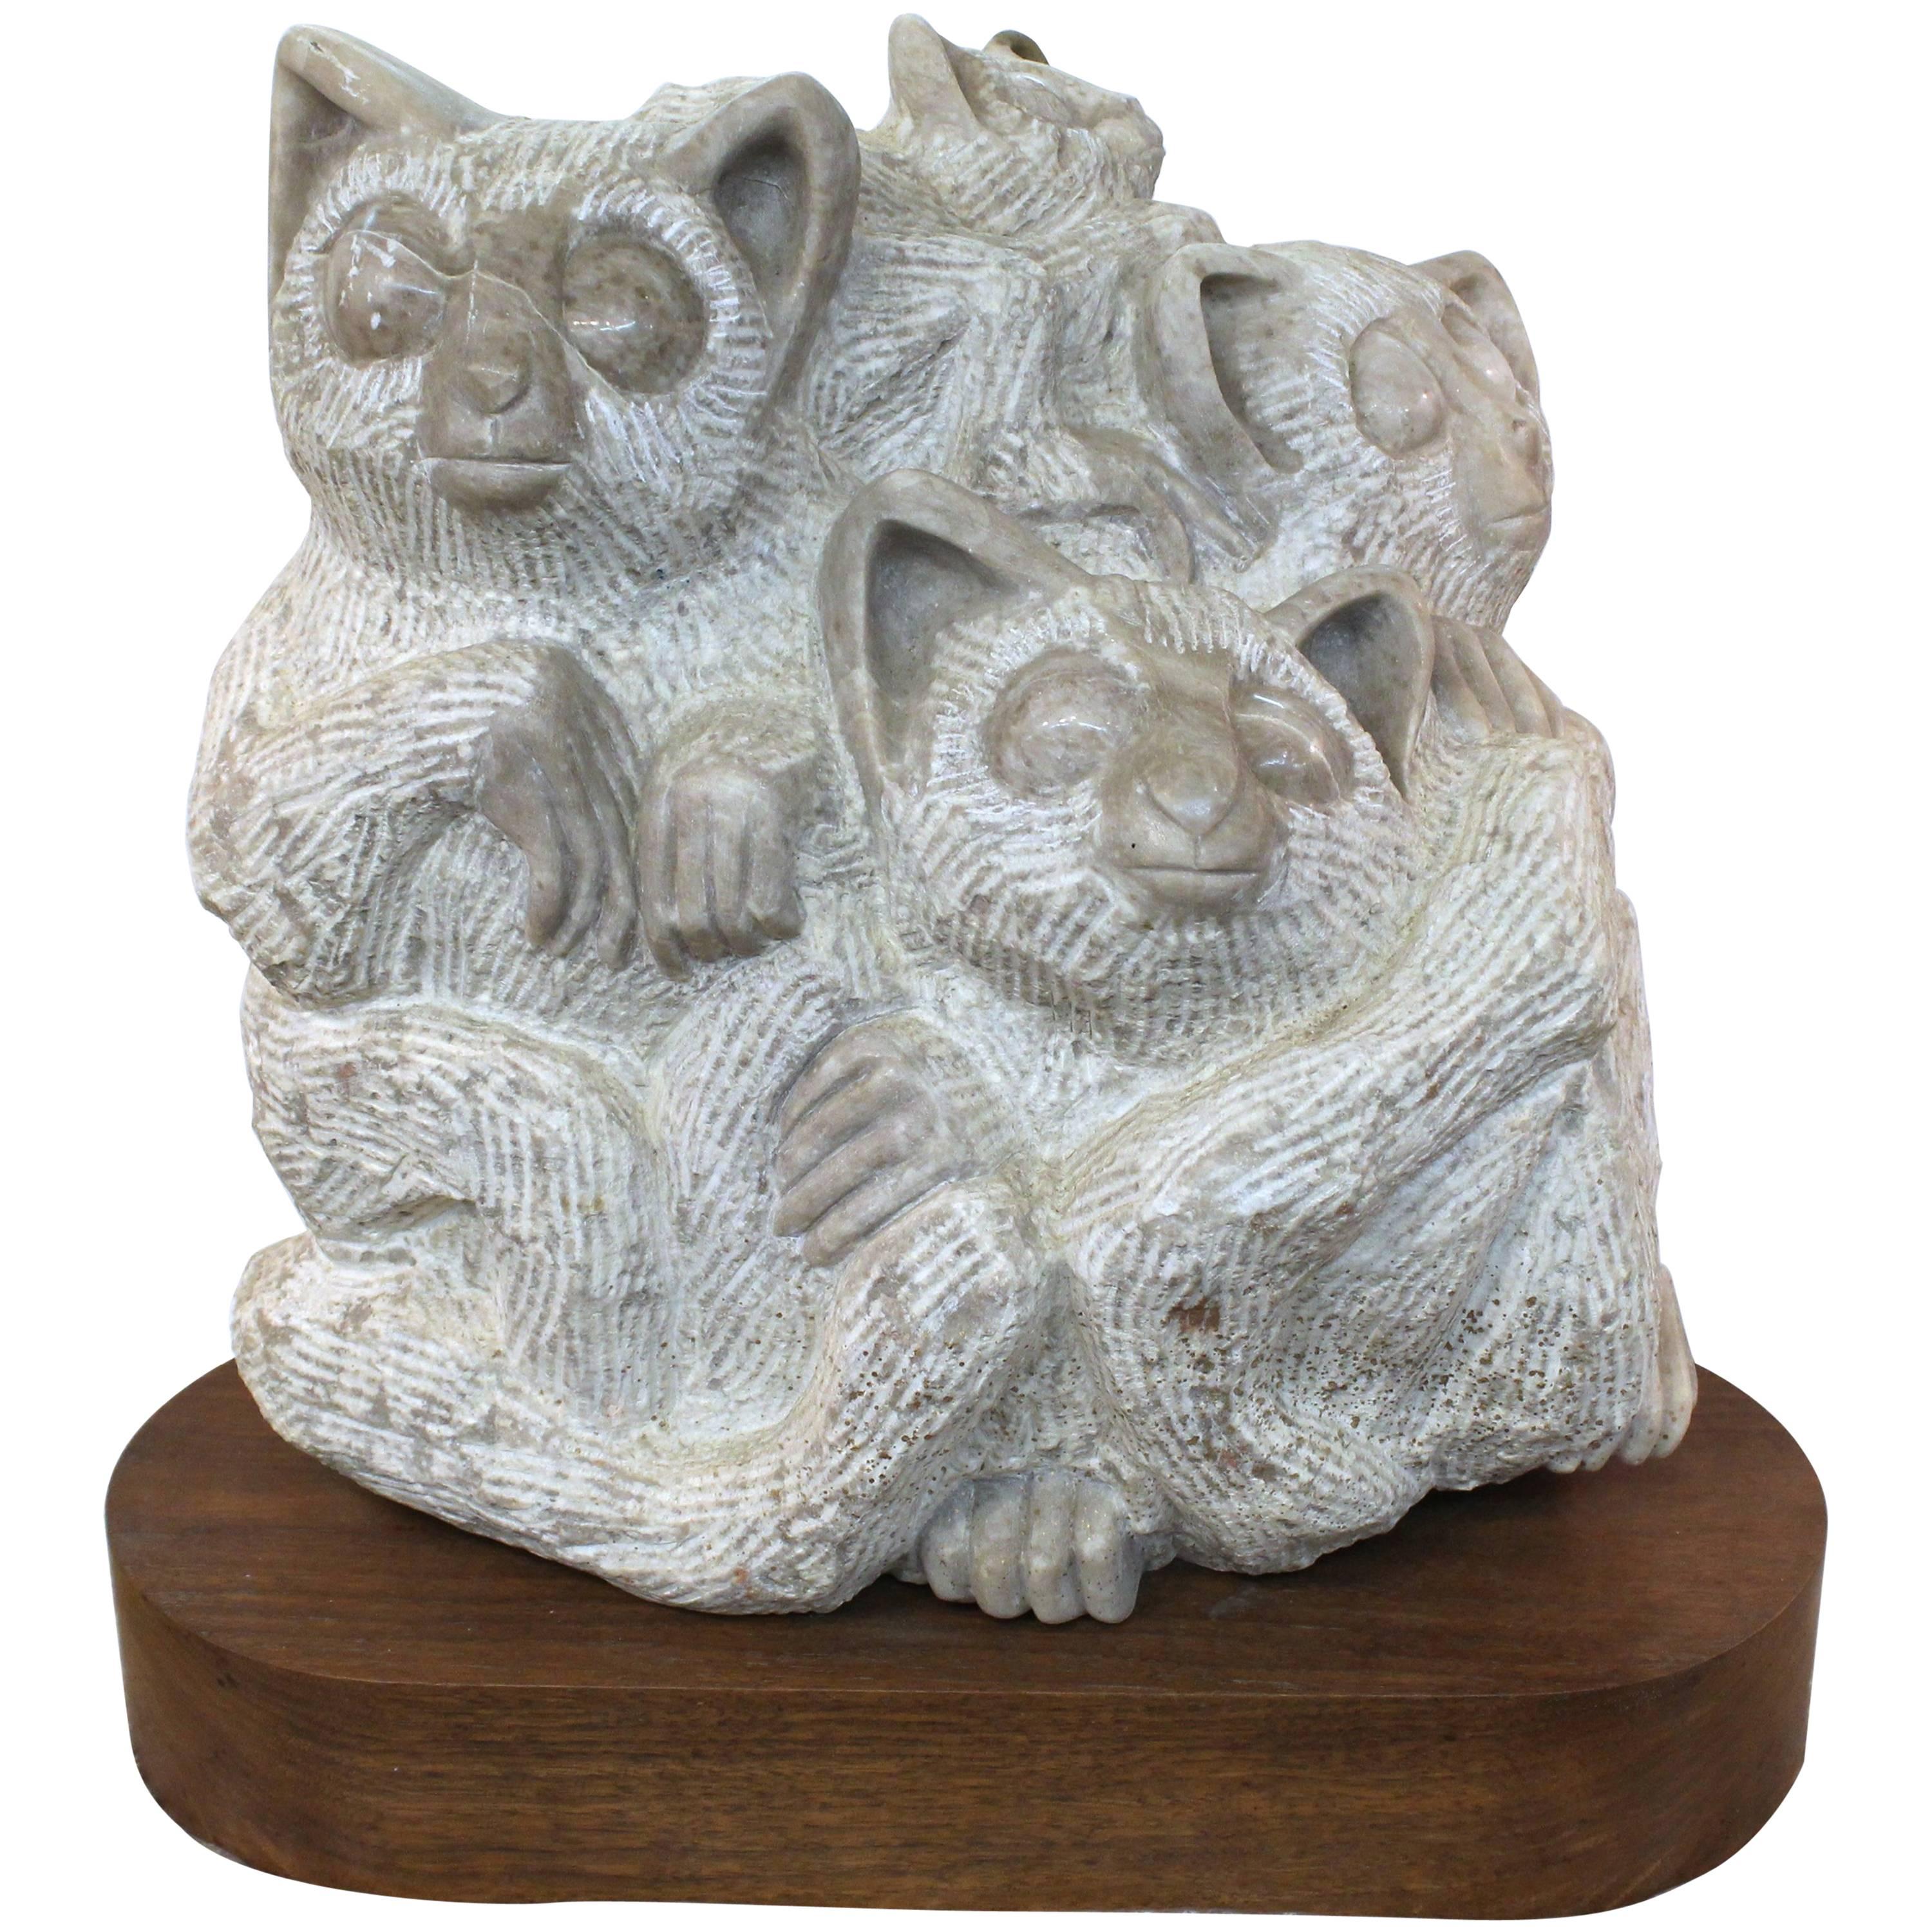 1960s Marble Sculpture of Lemurs